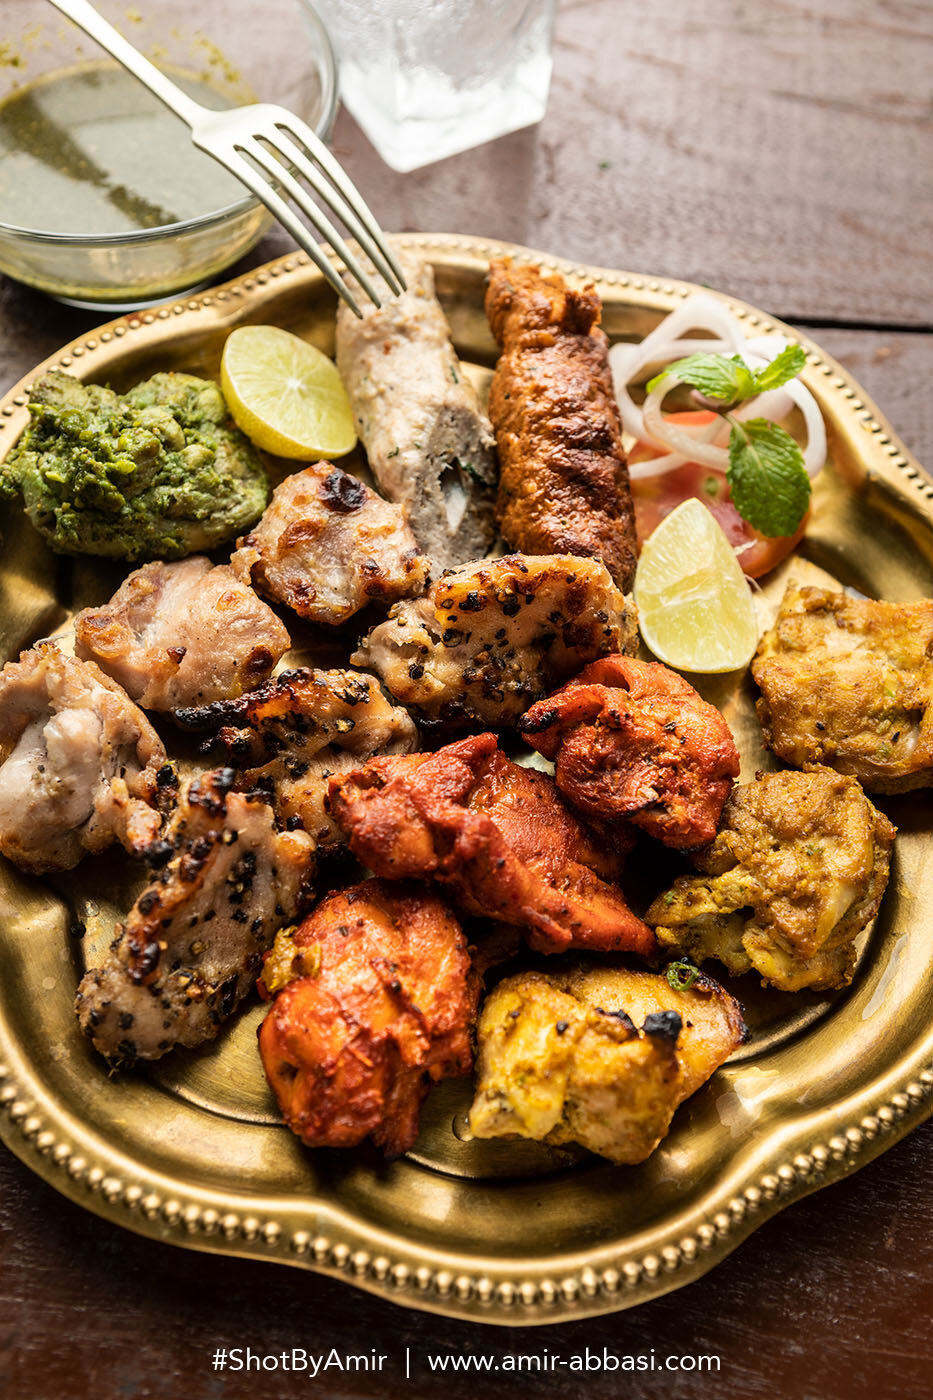 Best Food Photos of Mumbai